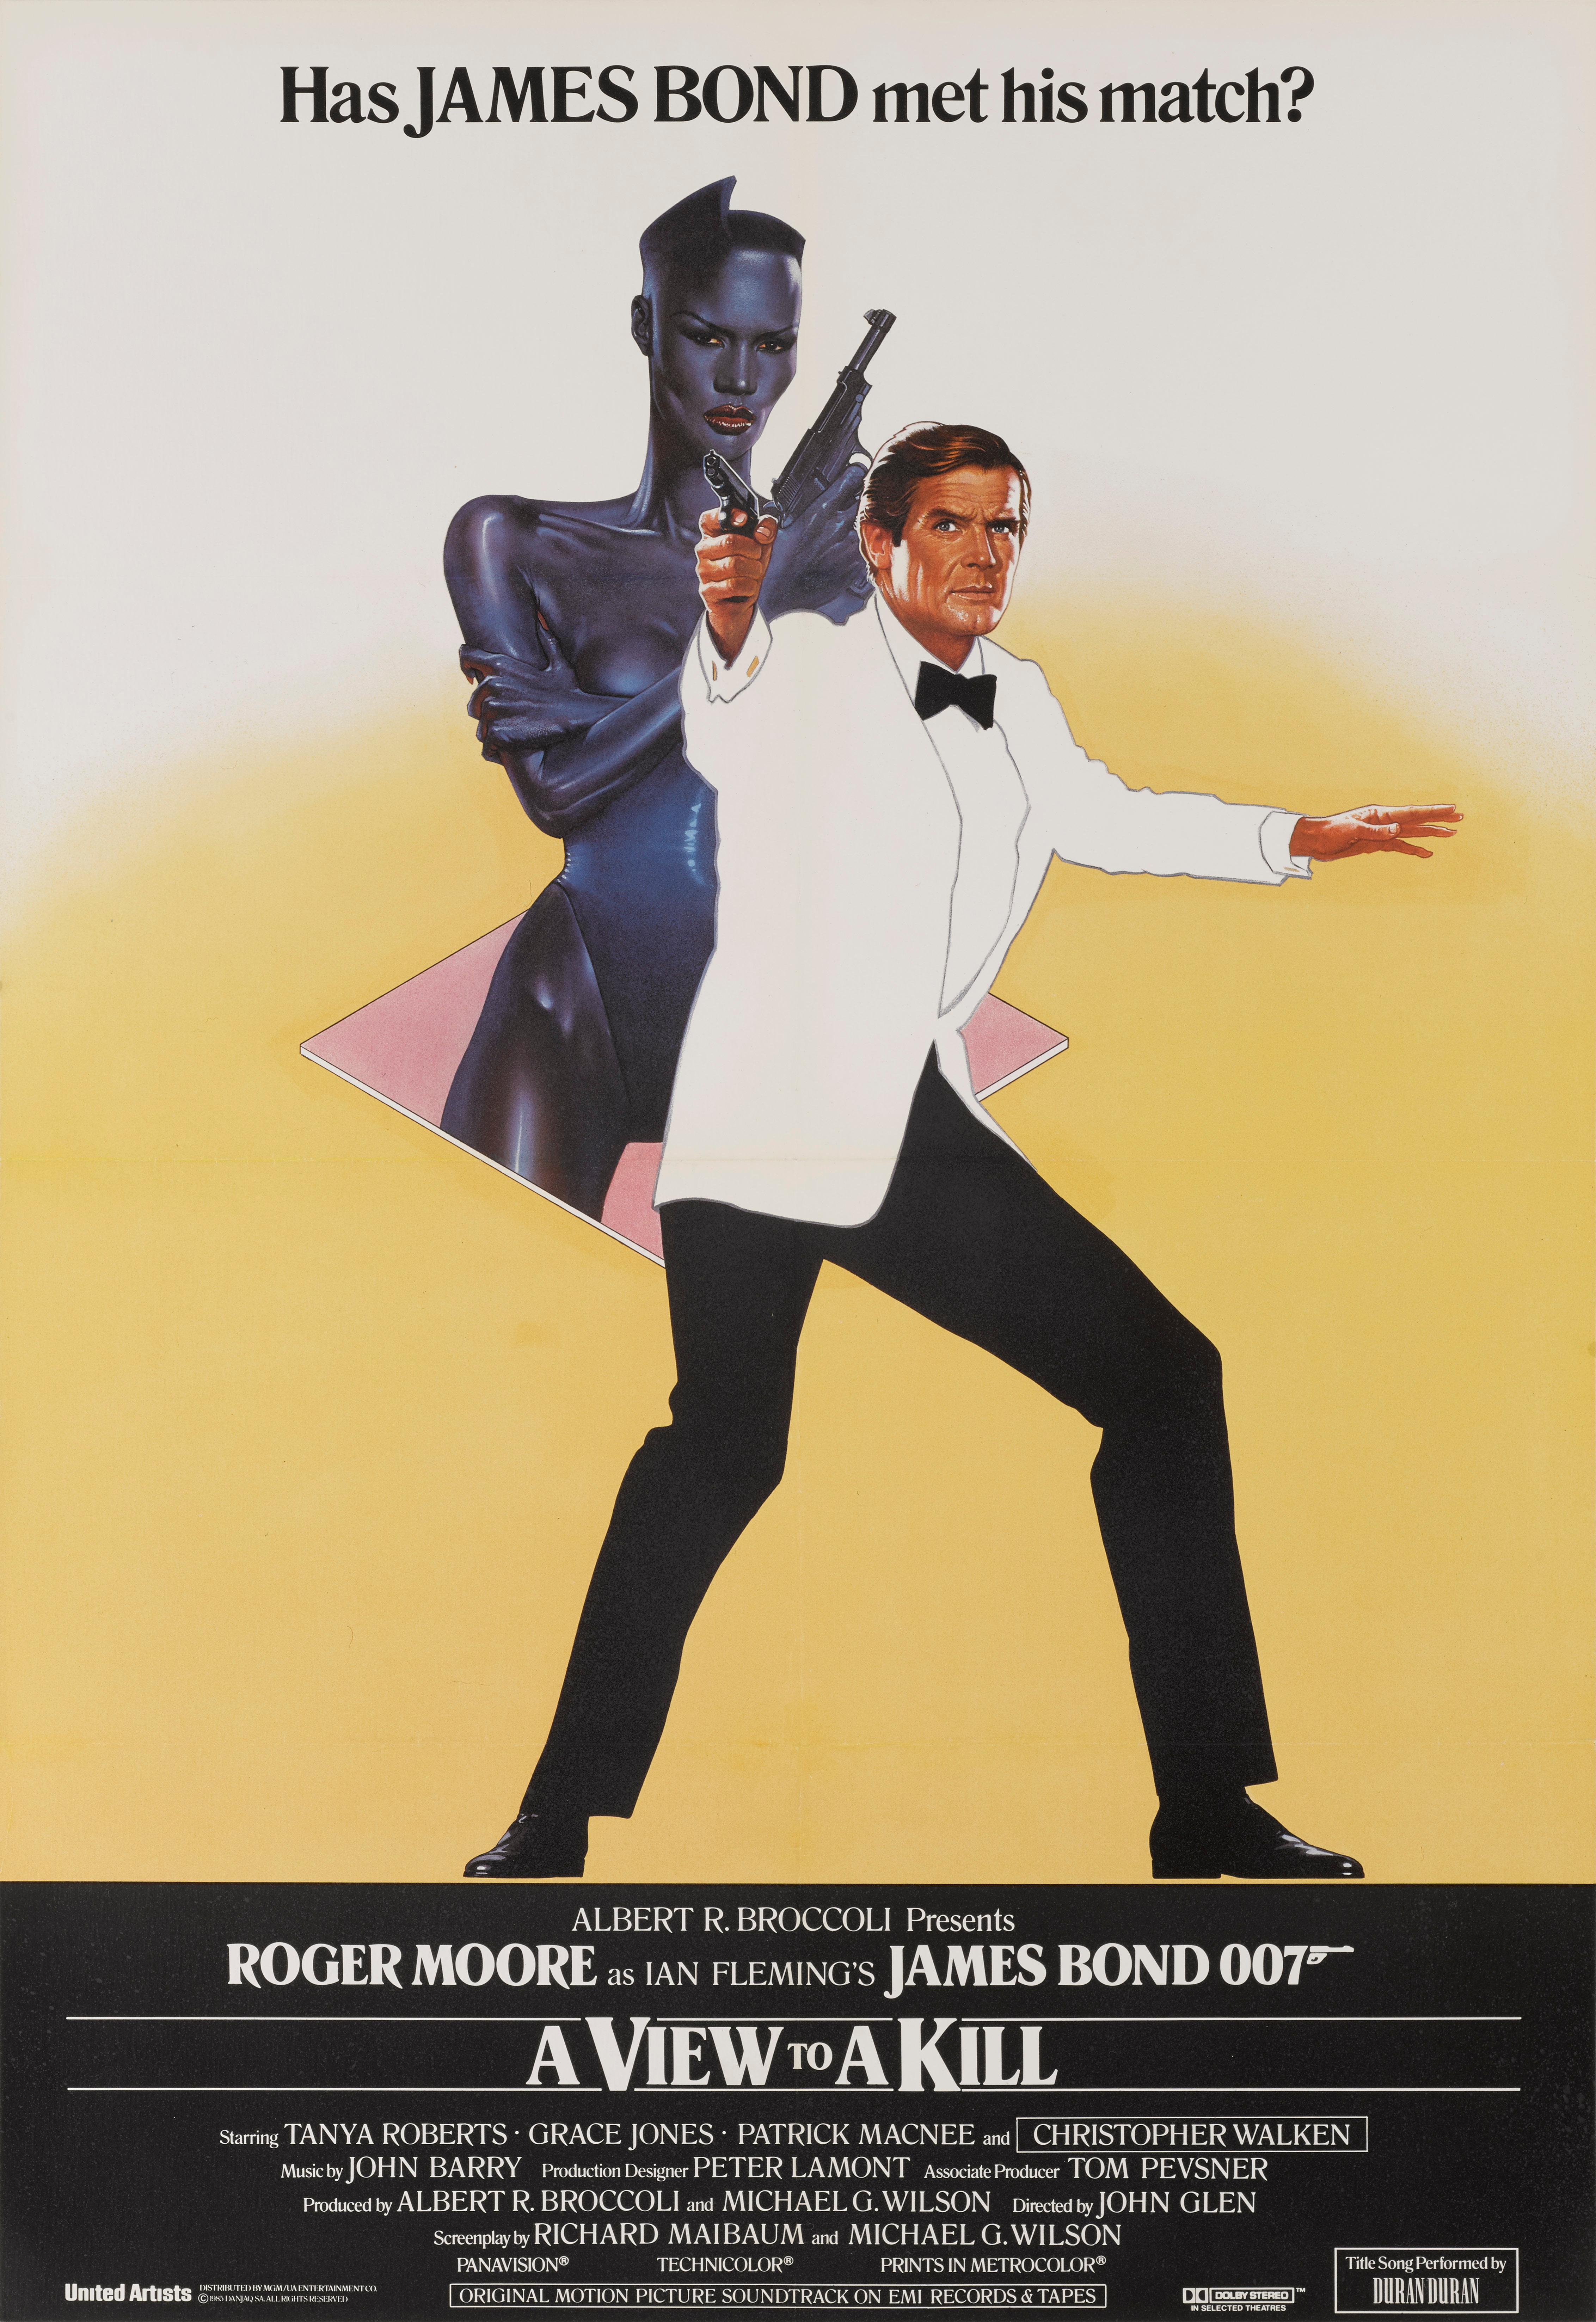 Originales britisches Filmplakat für A View to a Kill (1985), den fünfzehnten Bond-Film, den siebten und letzten Bond-Film mit Roger Moore in der Hauptrolle und den letzten mit Lois Maxwell als Miss Moneypenny. Der Film war der dritte Bond-Film